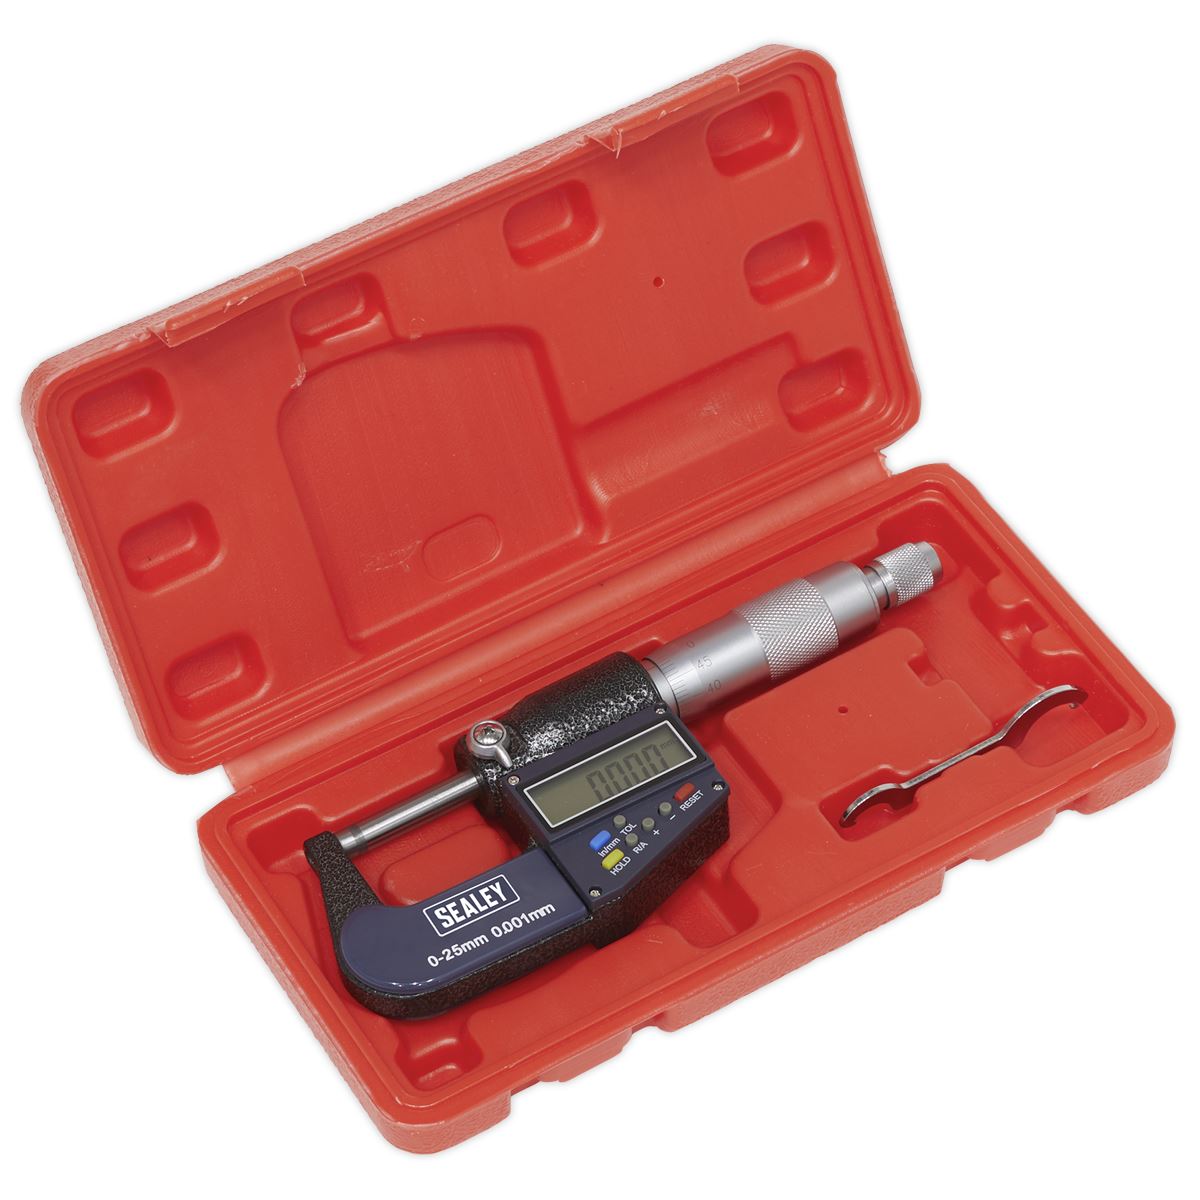 Sealey Digital External Micrometer 0-25mm(0-1")